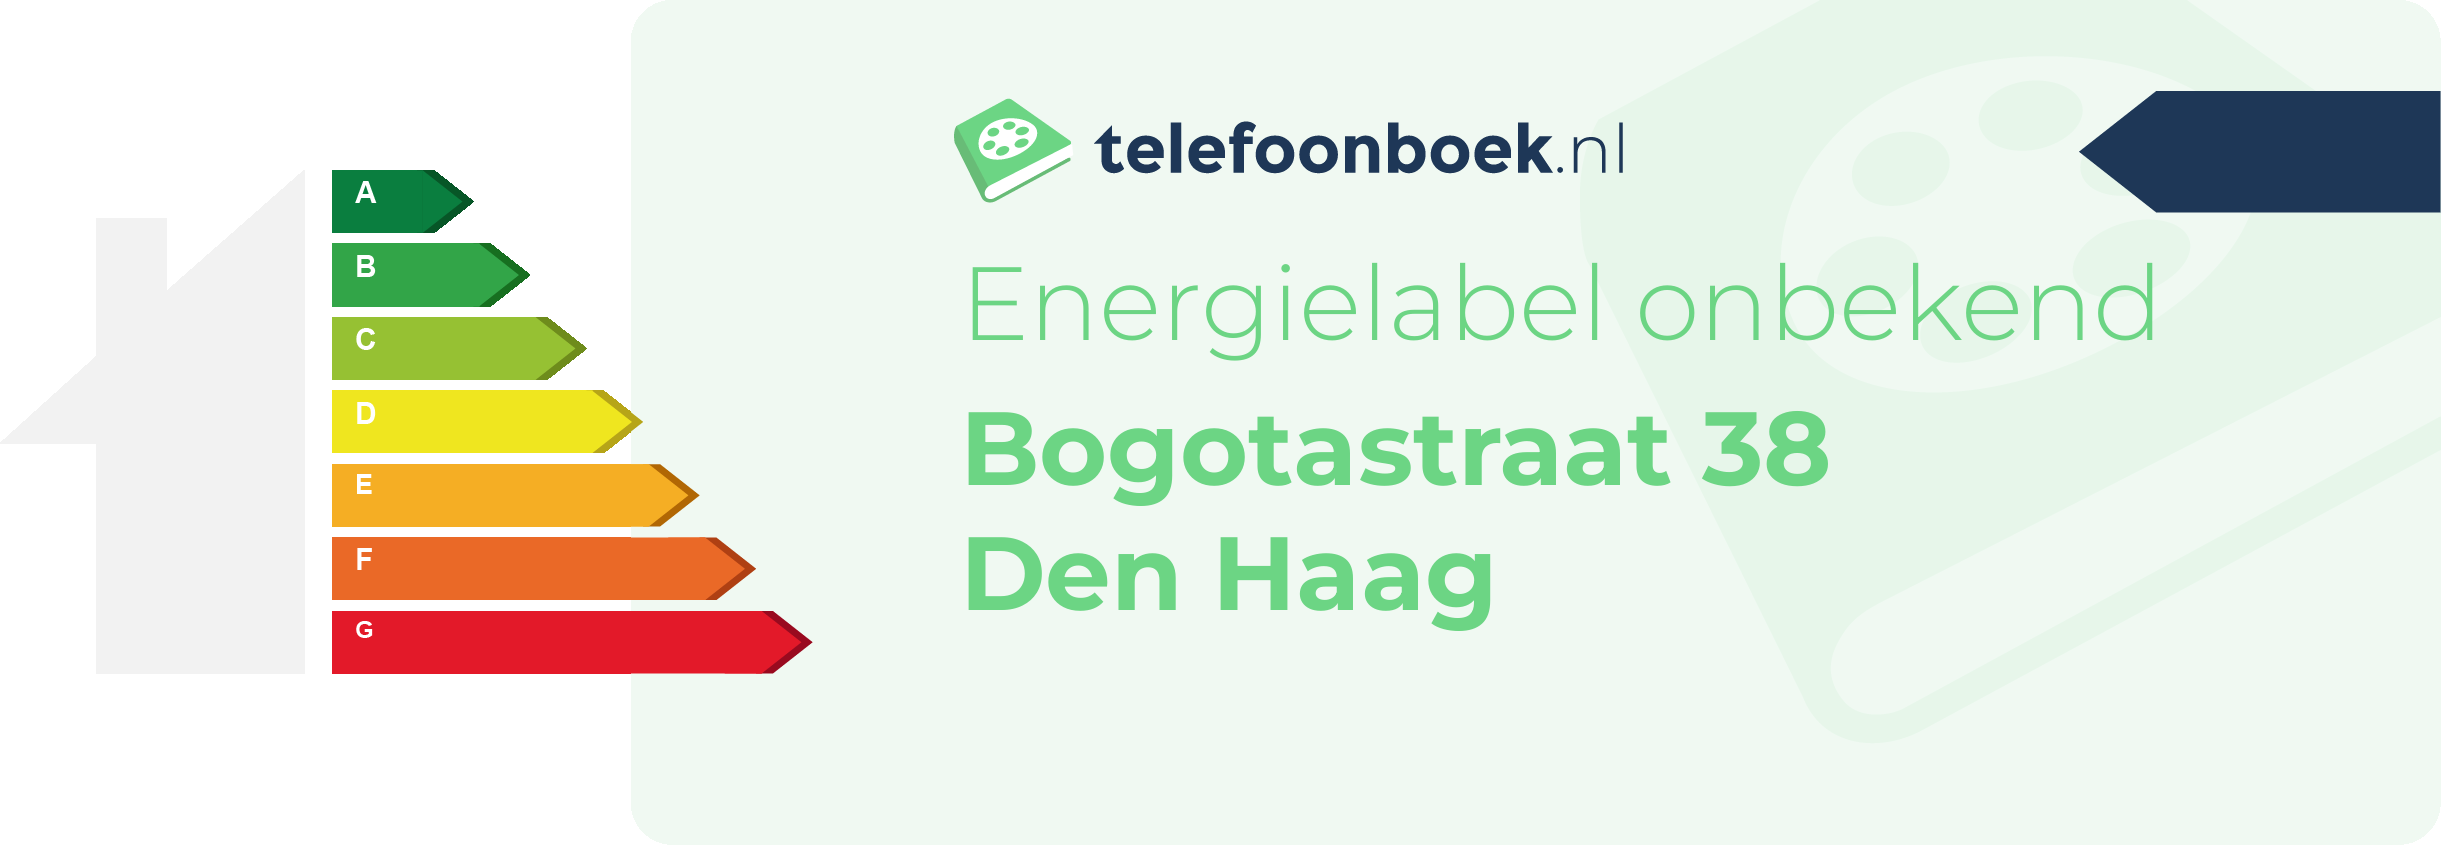 Energielabel Bogotastraat 38 Den Haag